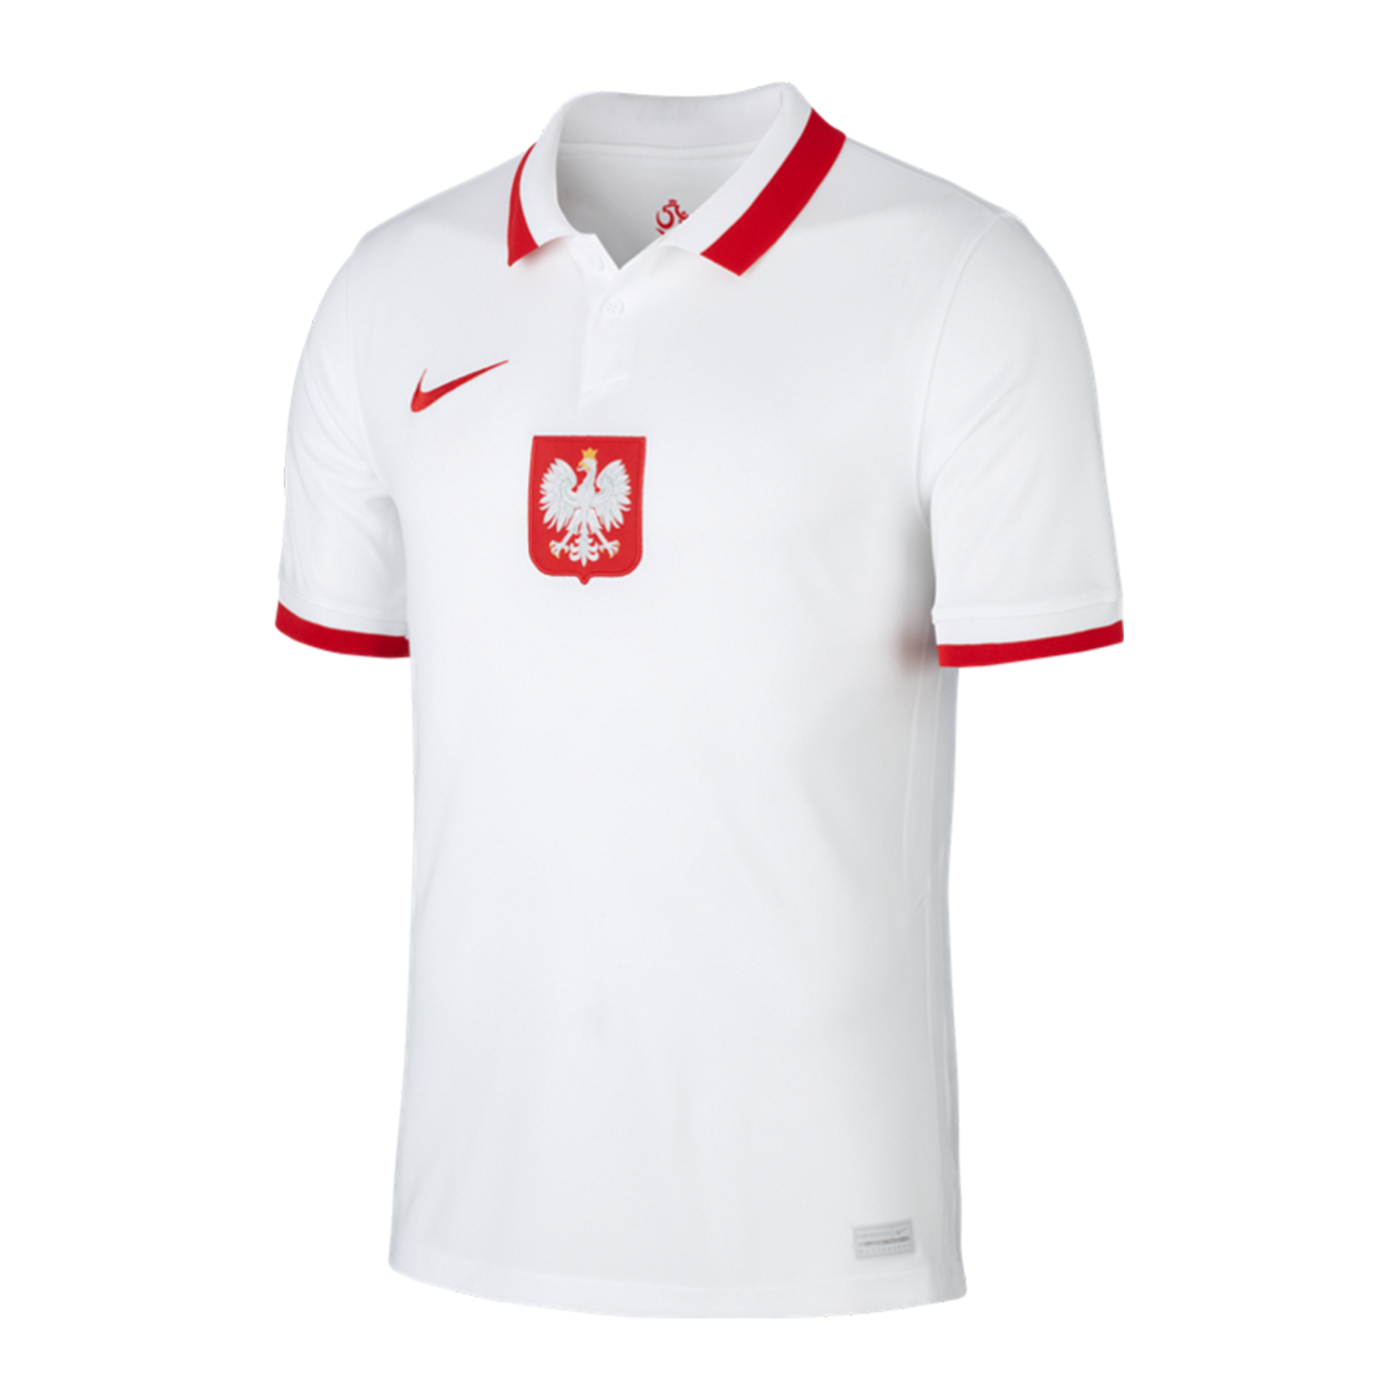 Nike Polen Trikot Home EM 2021 Weiss Rot F100 | Fanshop ...